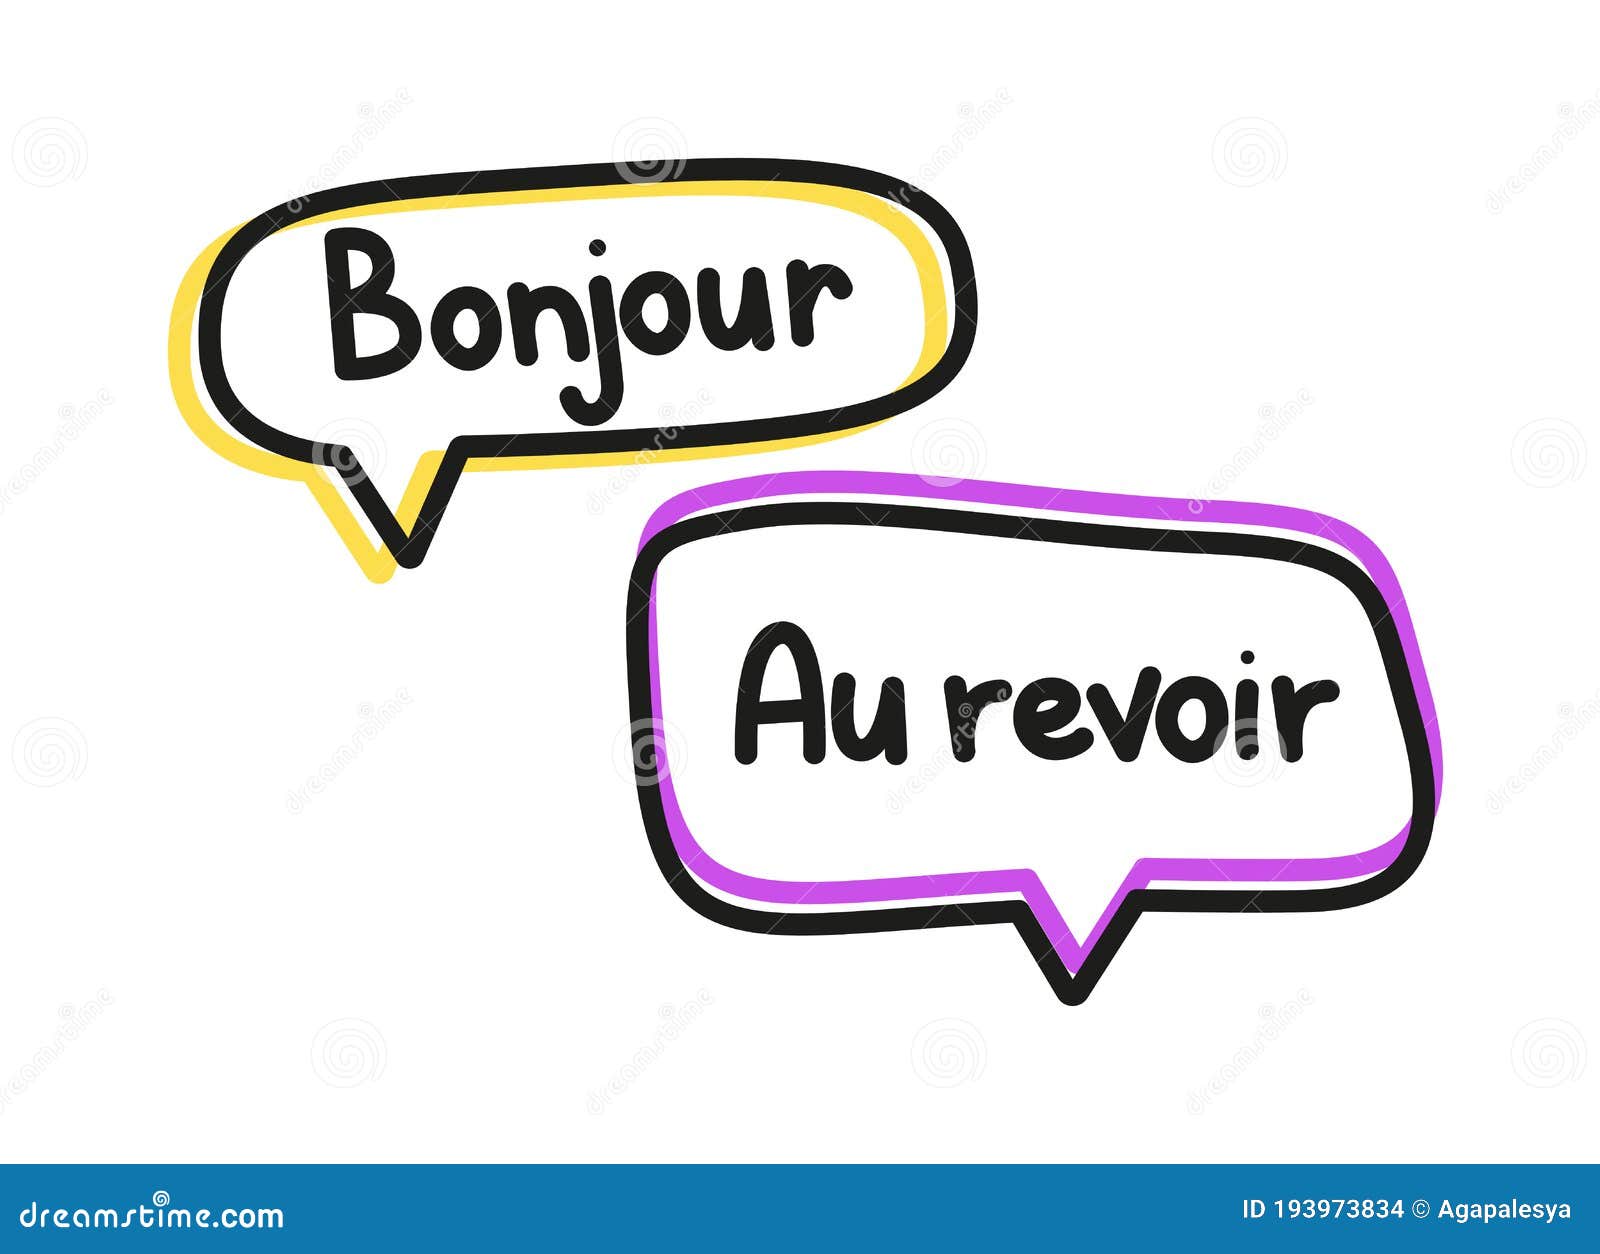 Bonjour Au Revoir Inscription Handwritten Lettering Illustration Black Vector Text In Neon Speech Bubbles Stock Vector Illustration Of French Brush